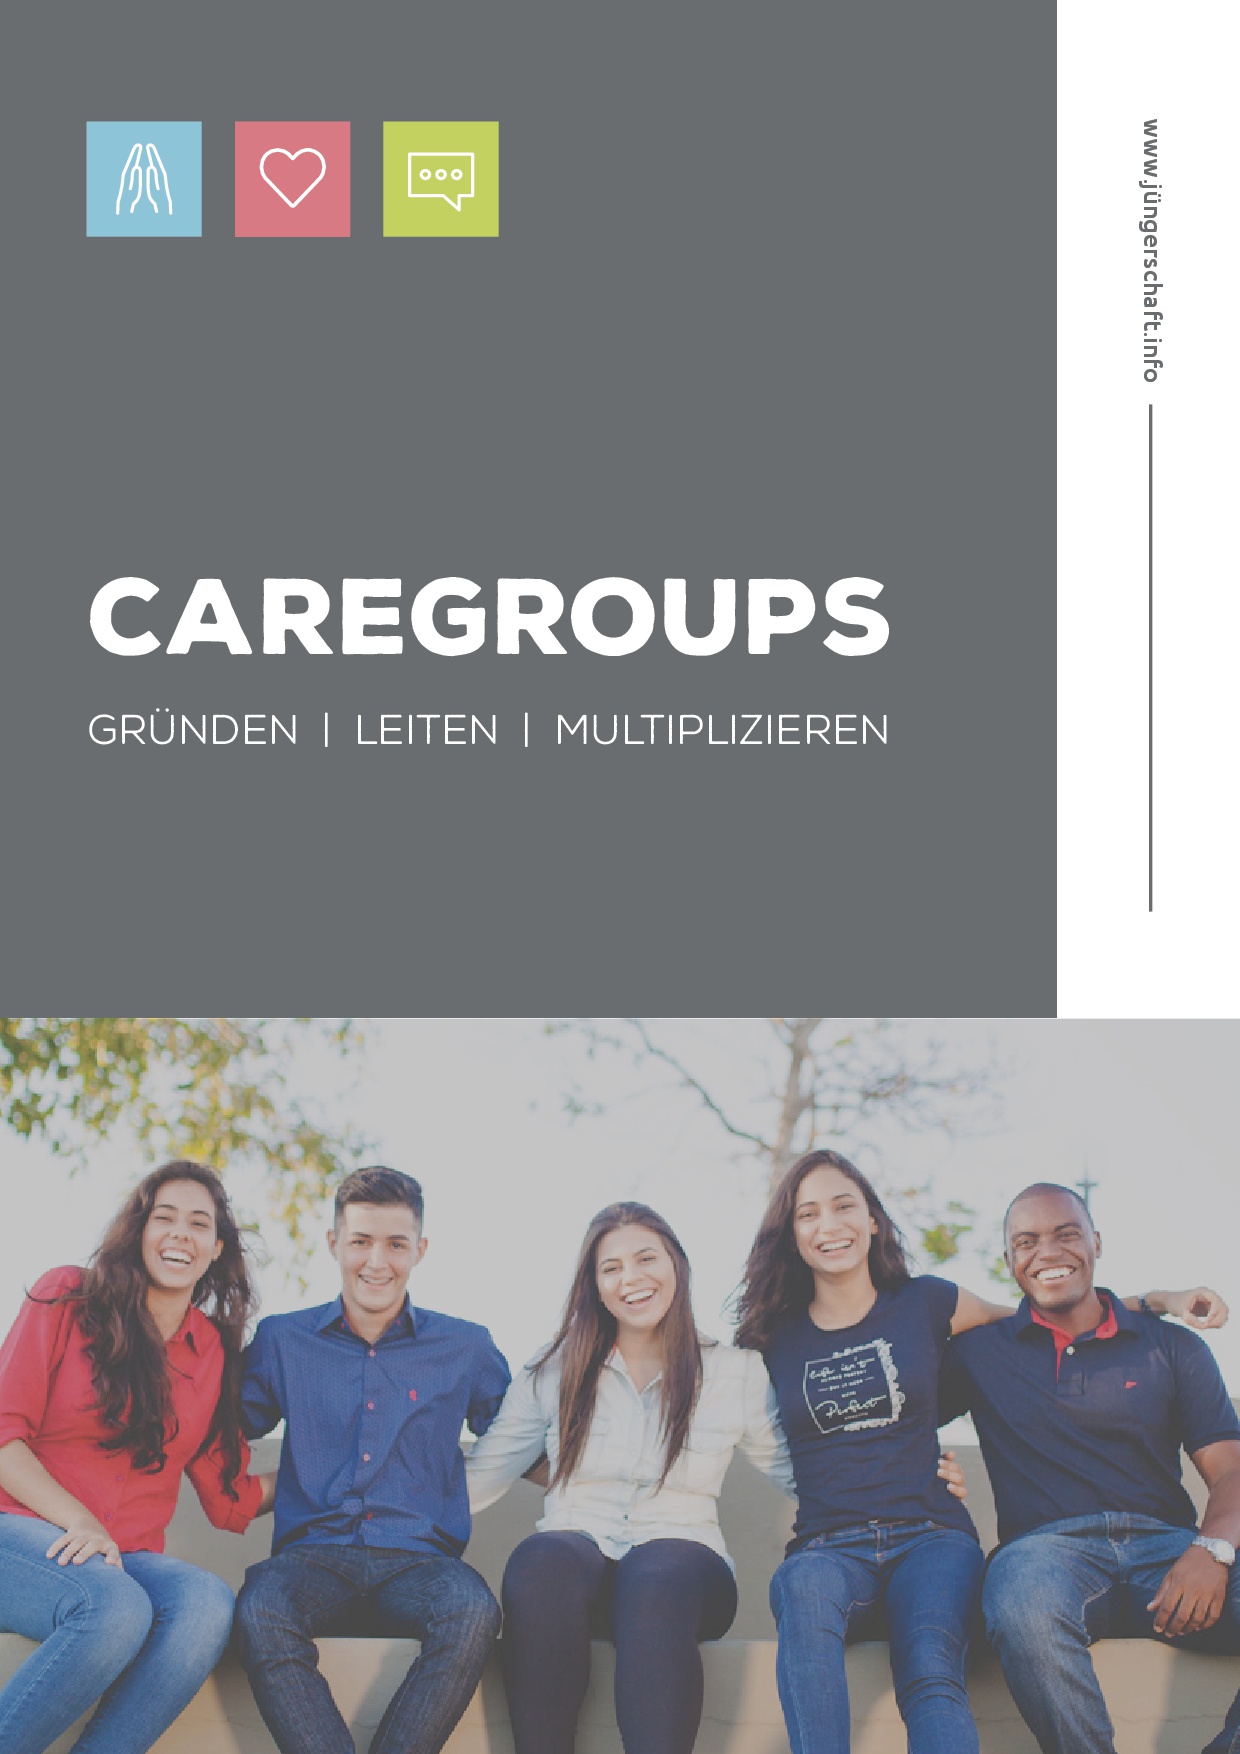 Caregroups